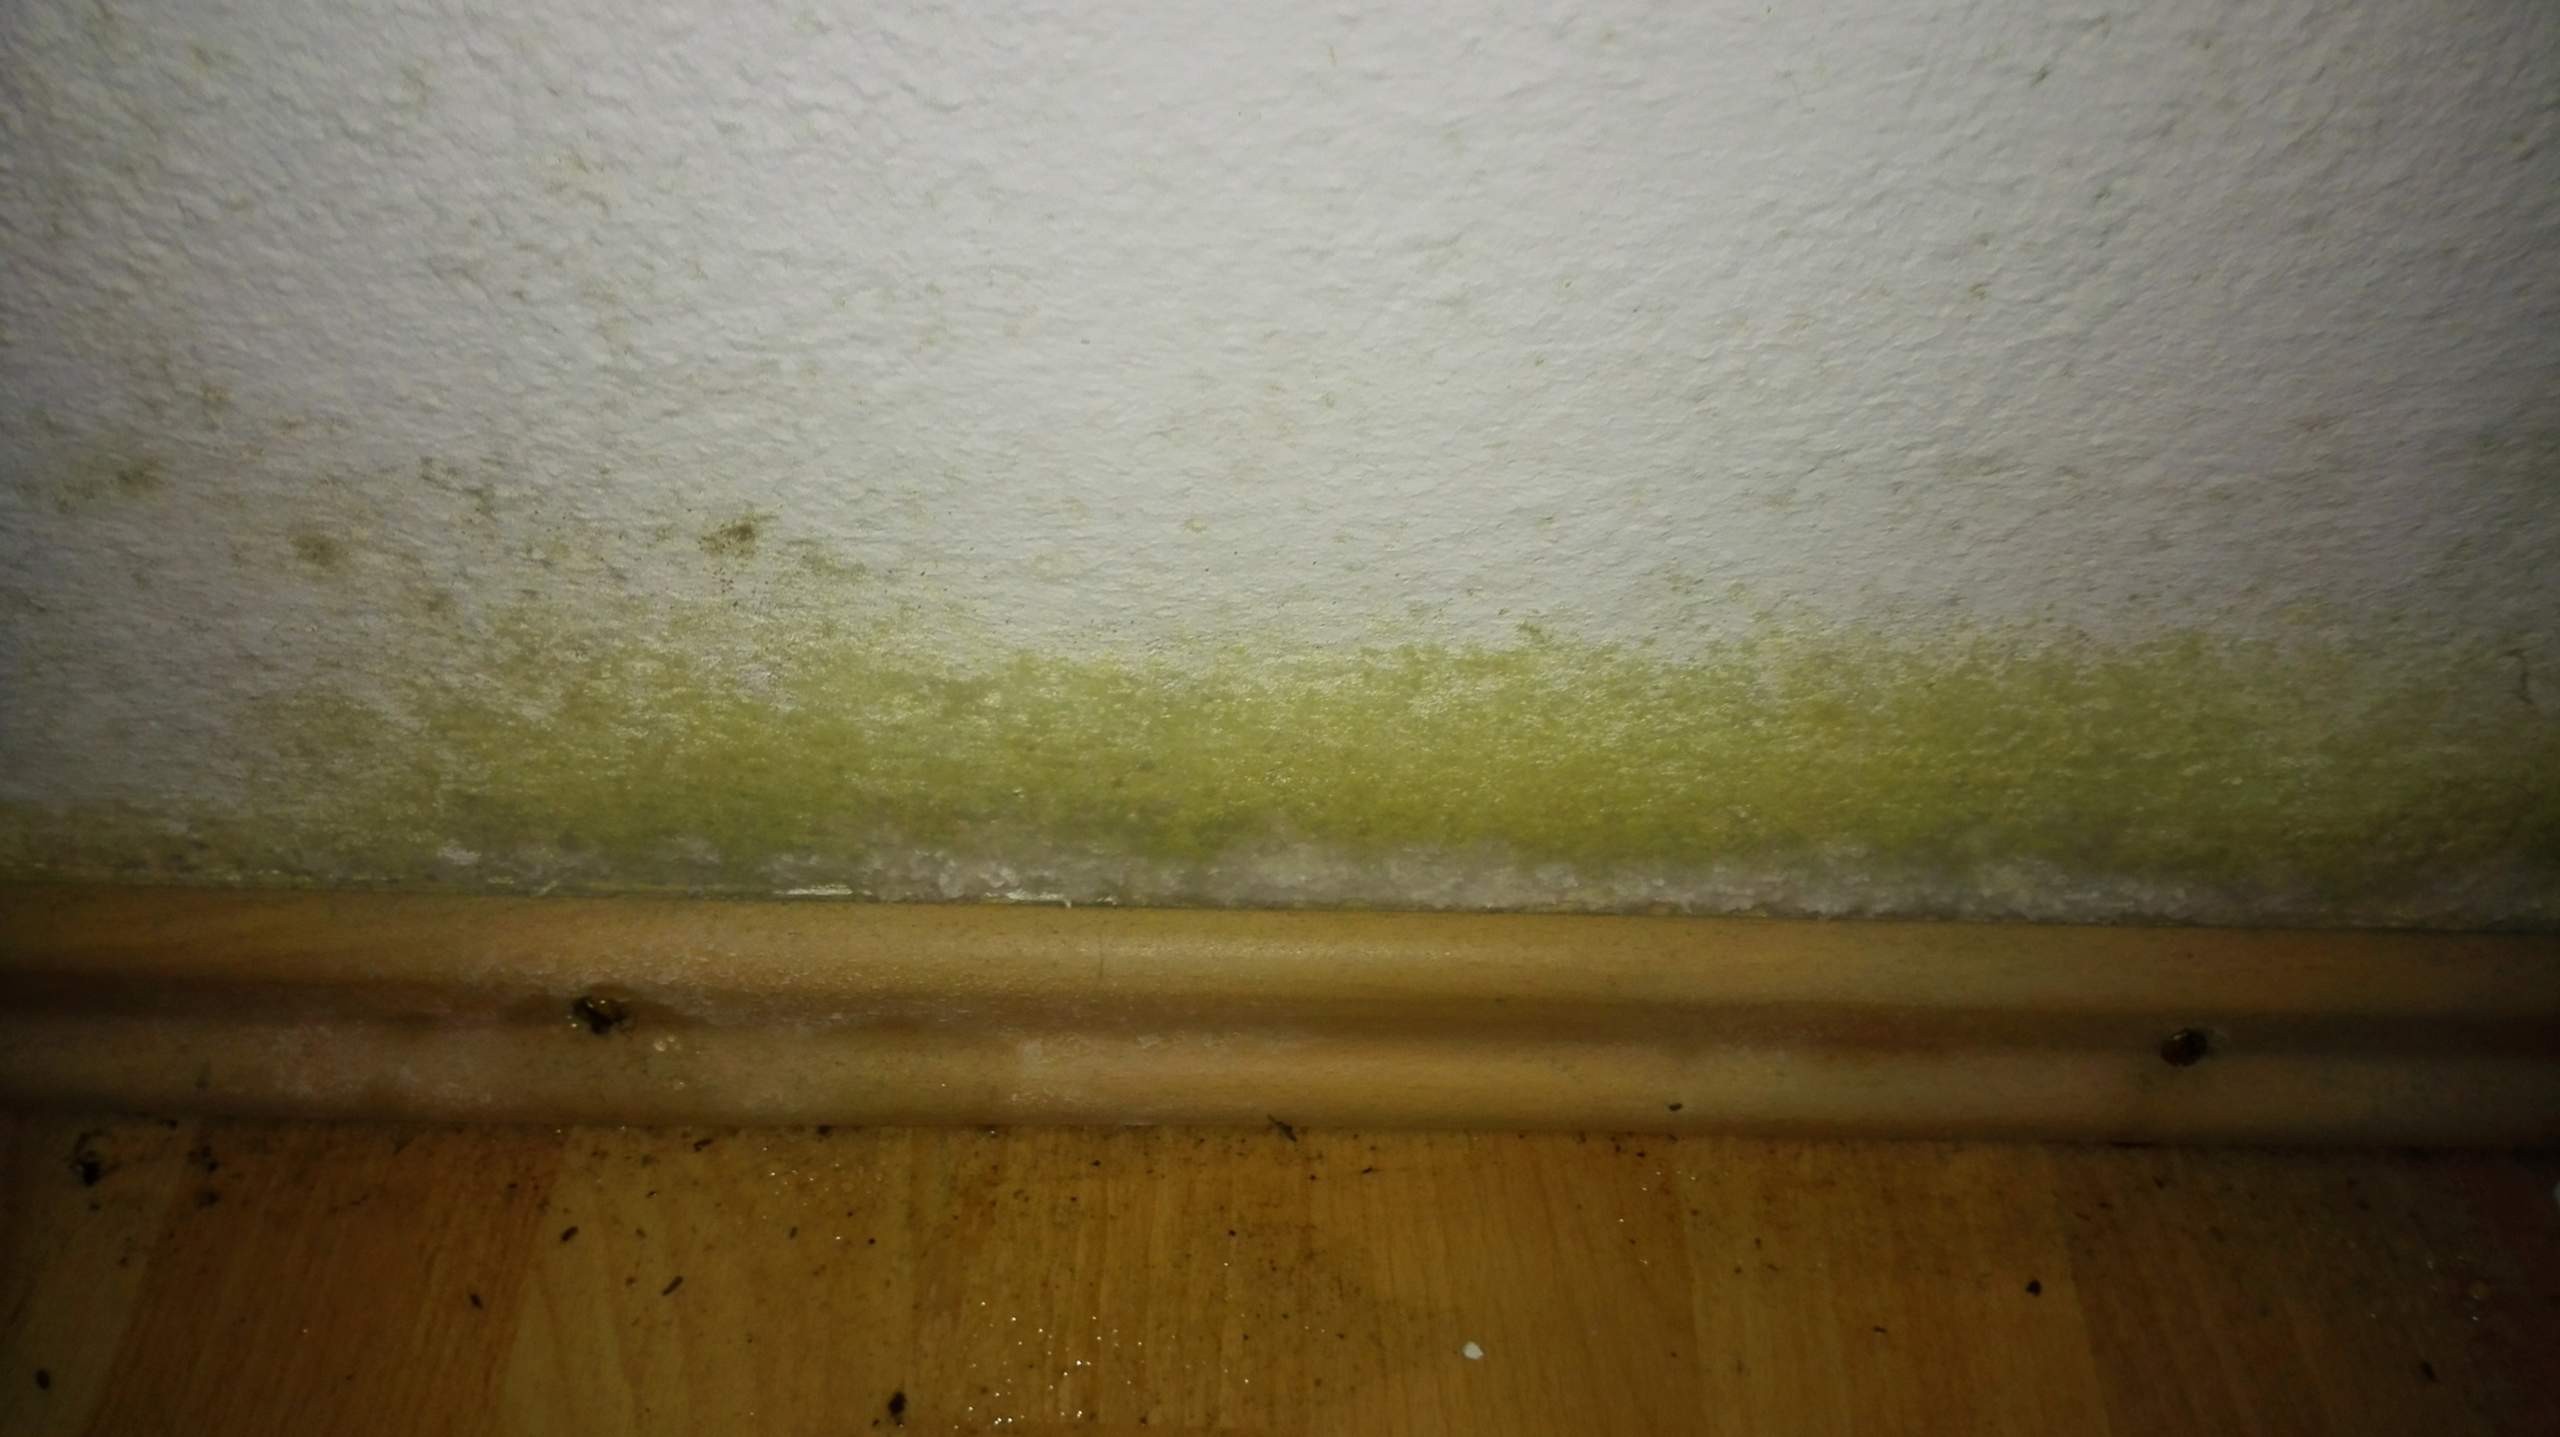 Grüner Schimmel an der Wand - woher kommt er, wie entfernen?